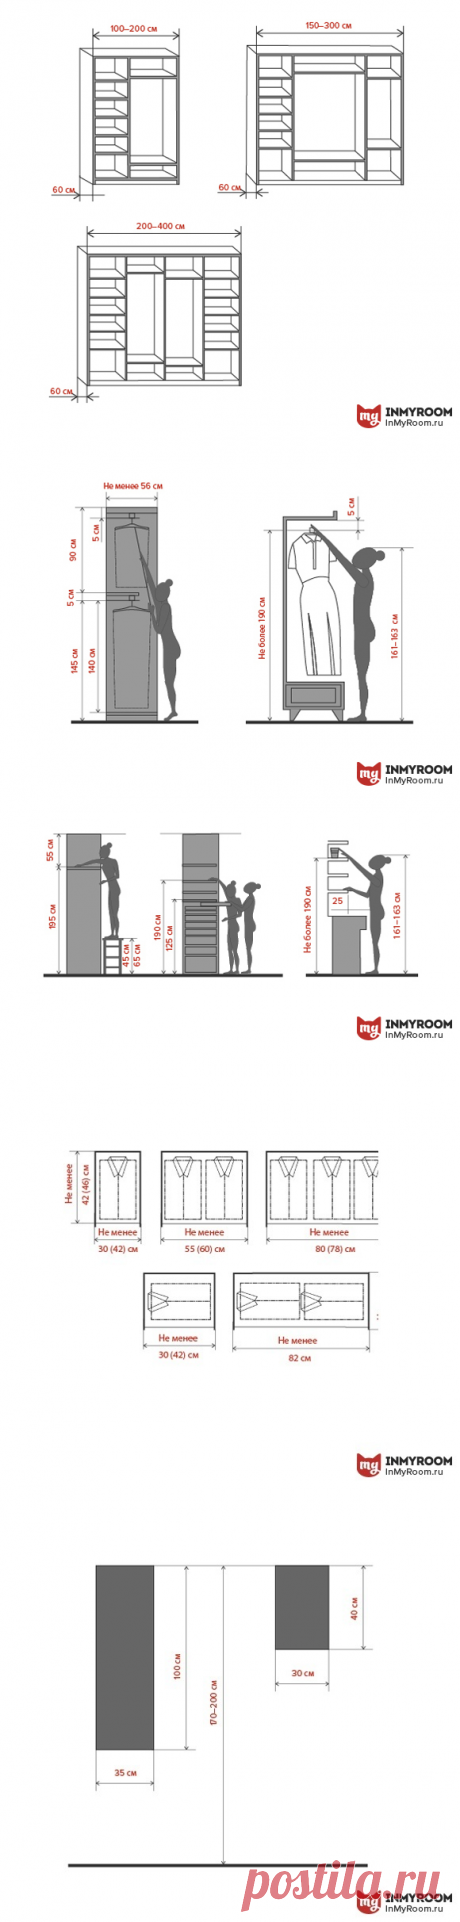 Что учесть при планировке гардероба: 5 важных нюансов | Свежие идеи дизайна интерьеров, декора, архитектуры на InMyRoom.ru

&gt;&gt;&gt;&gt;&gt;&gt;&gt;